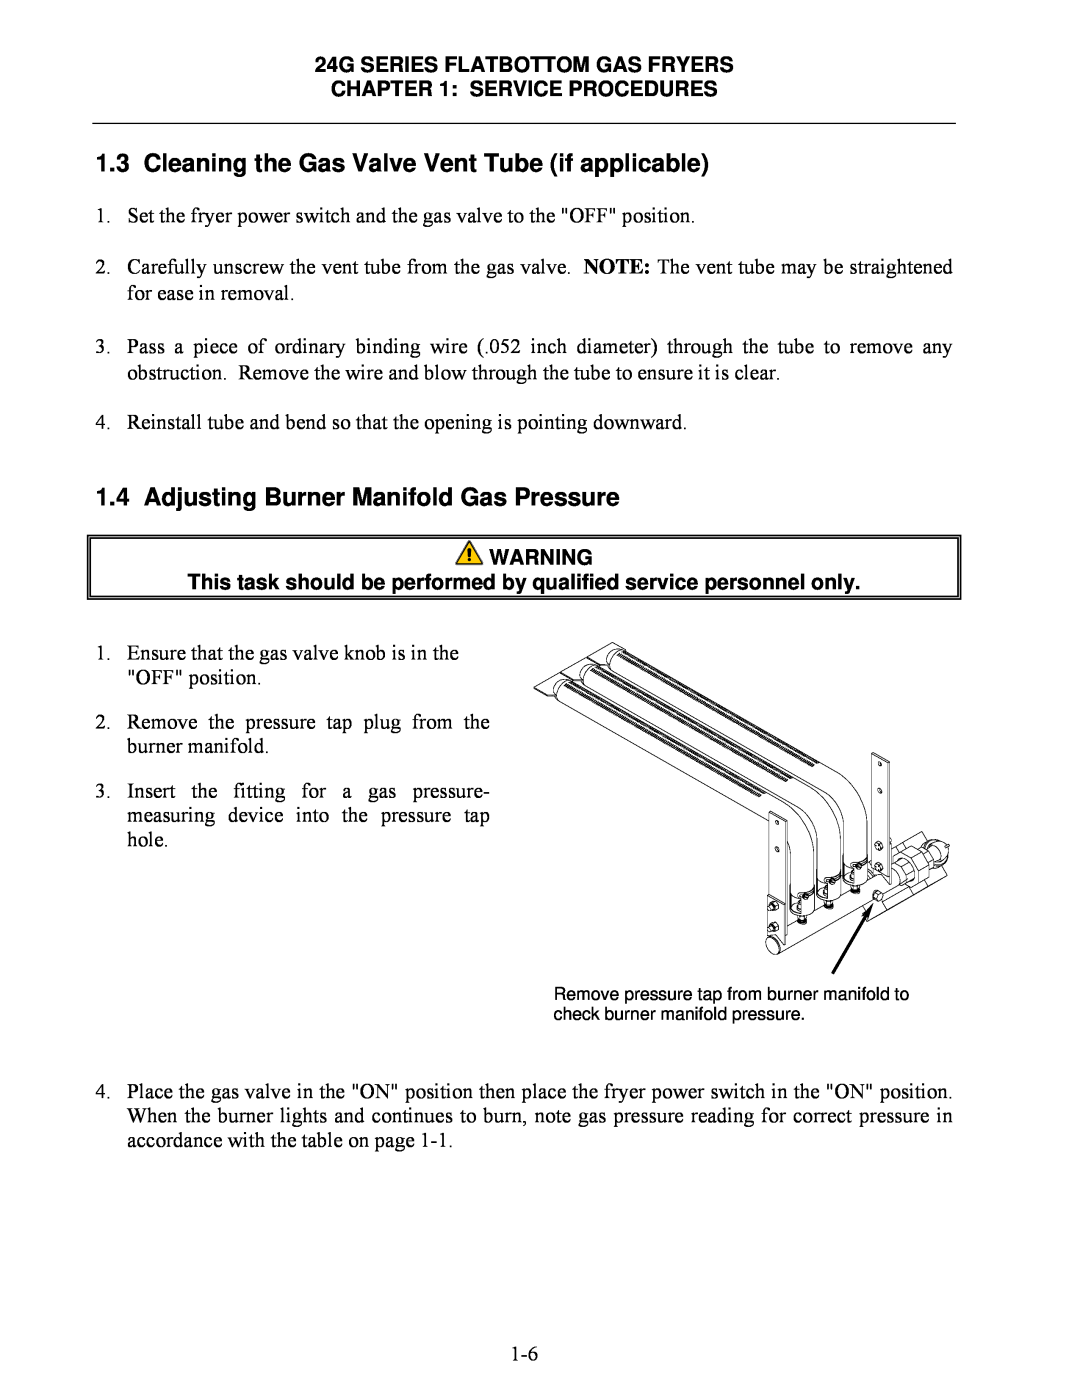 Frymaster 1824G, 2424G manual Adjusting Burner Manifold Gas Pressure 